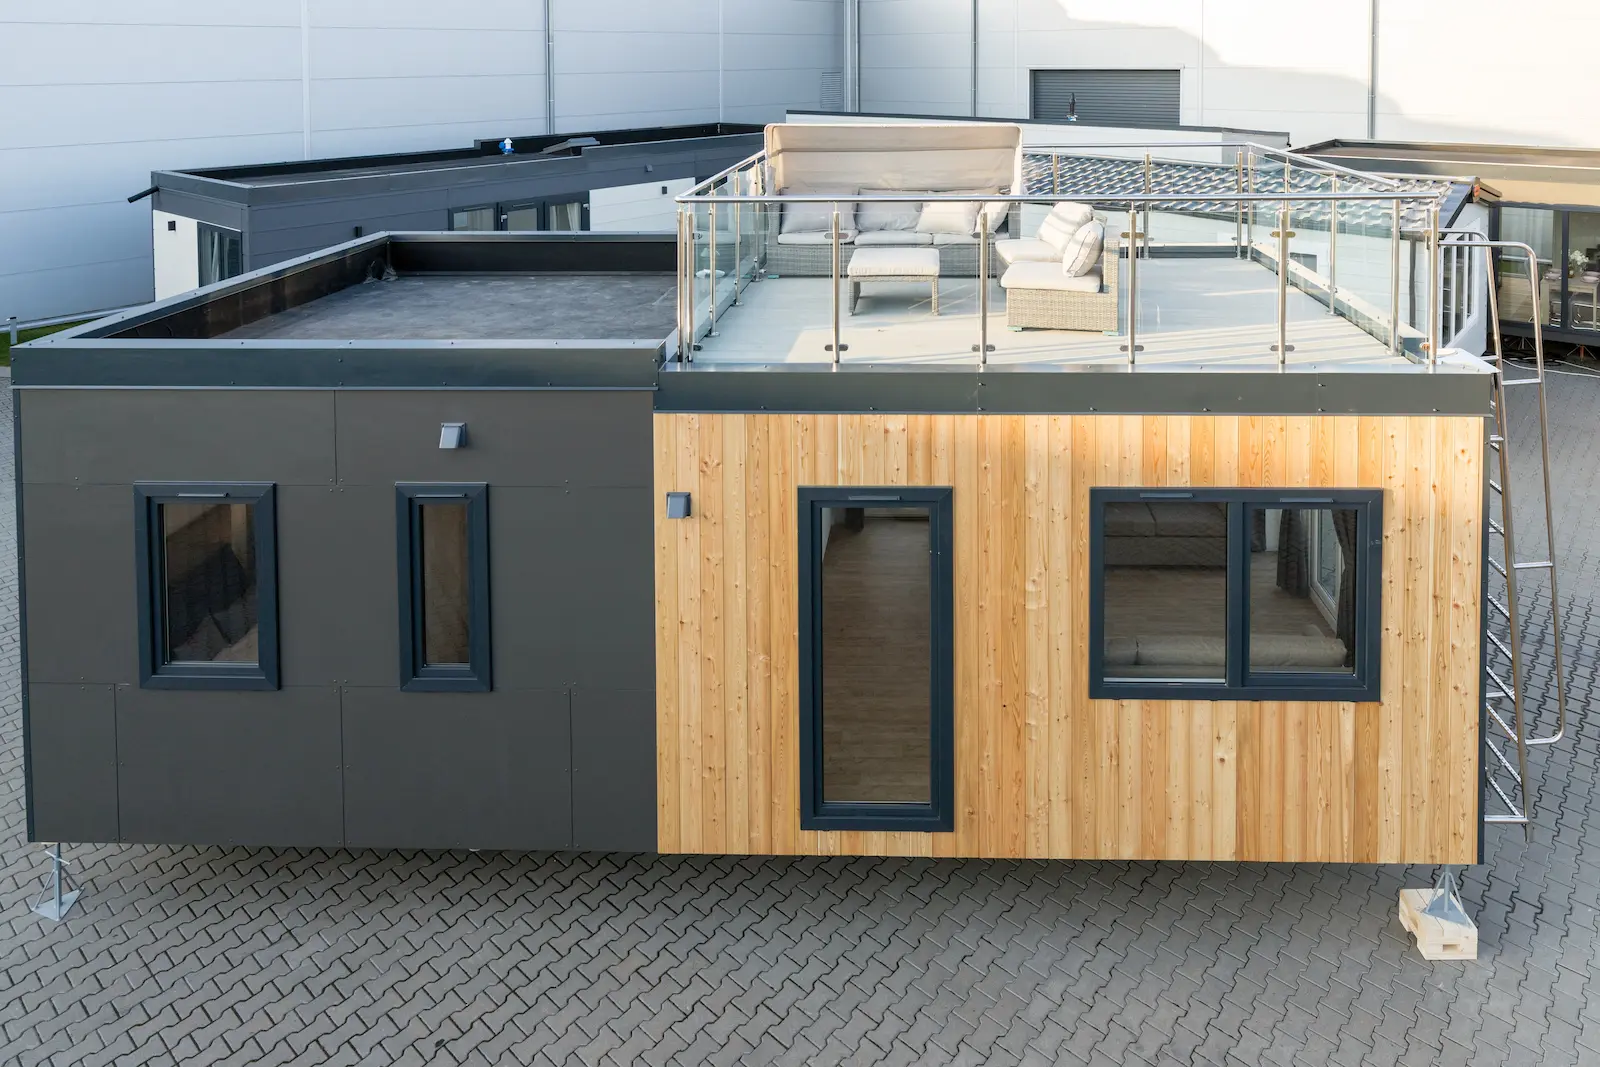 maison mobile avec une terrasse sur le toit, sur la terrasse il y a un endroit pour se reposer